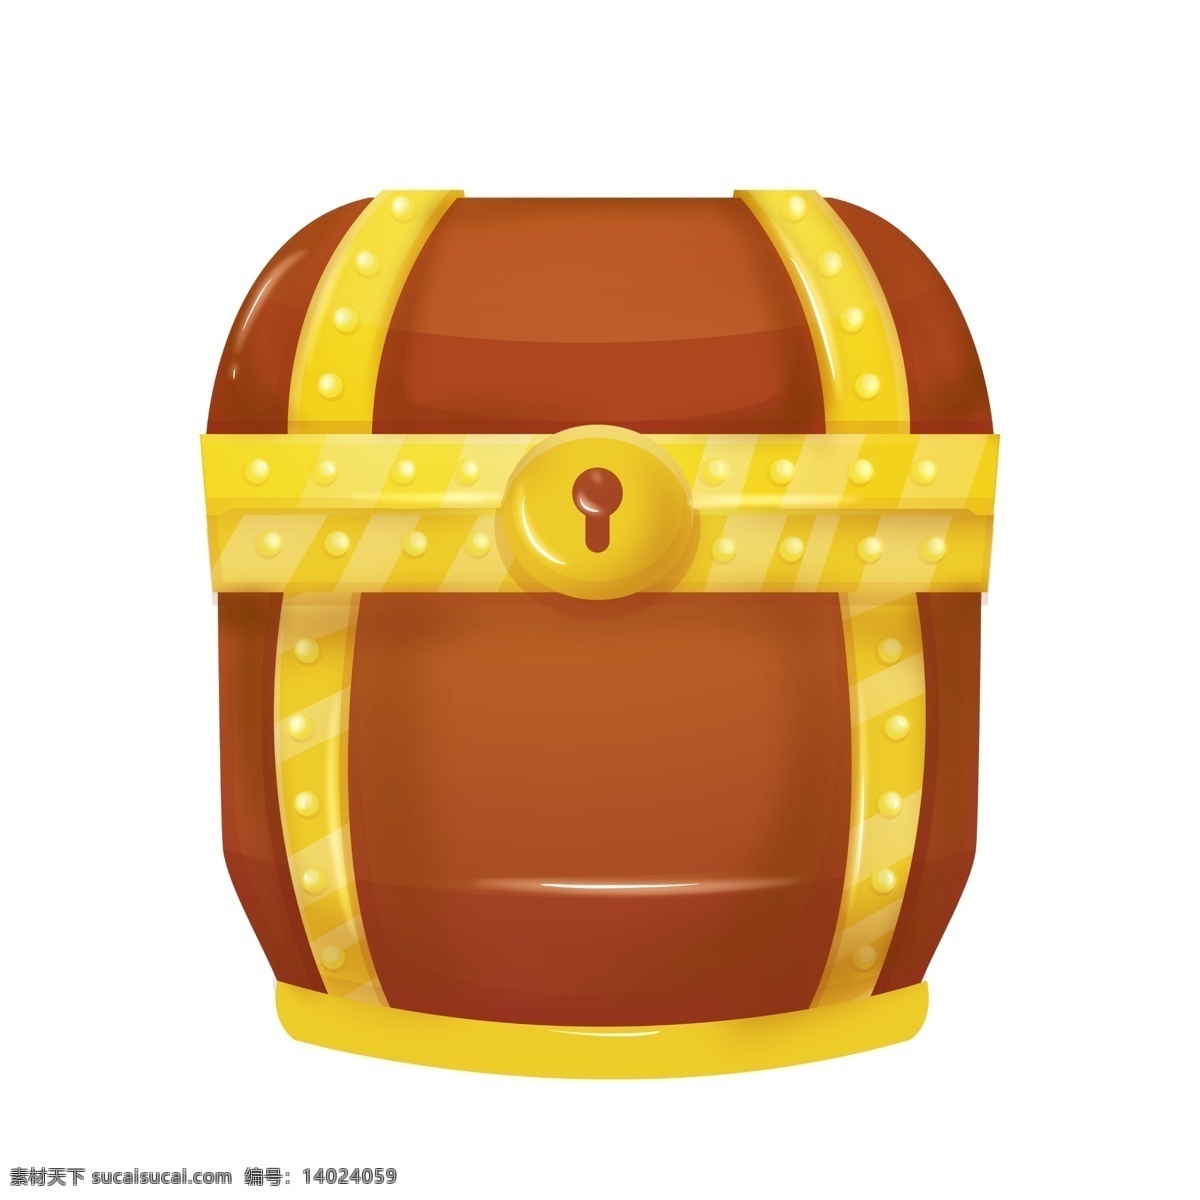 棕色 圆形 宝 箱 插图 箱子设计 一个宝箱插画 箱子插图 合起来的宝箱 活动宝箱 炫酷宝箱 金黄宝箱